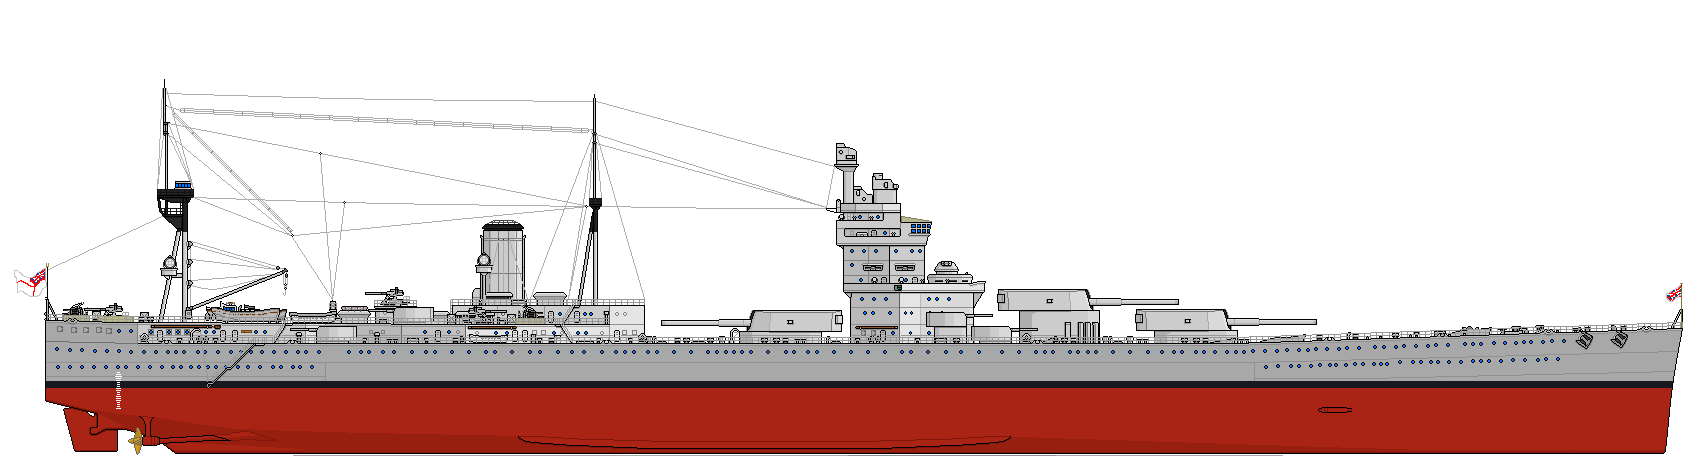 n3级战列舰设计图